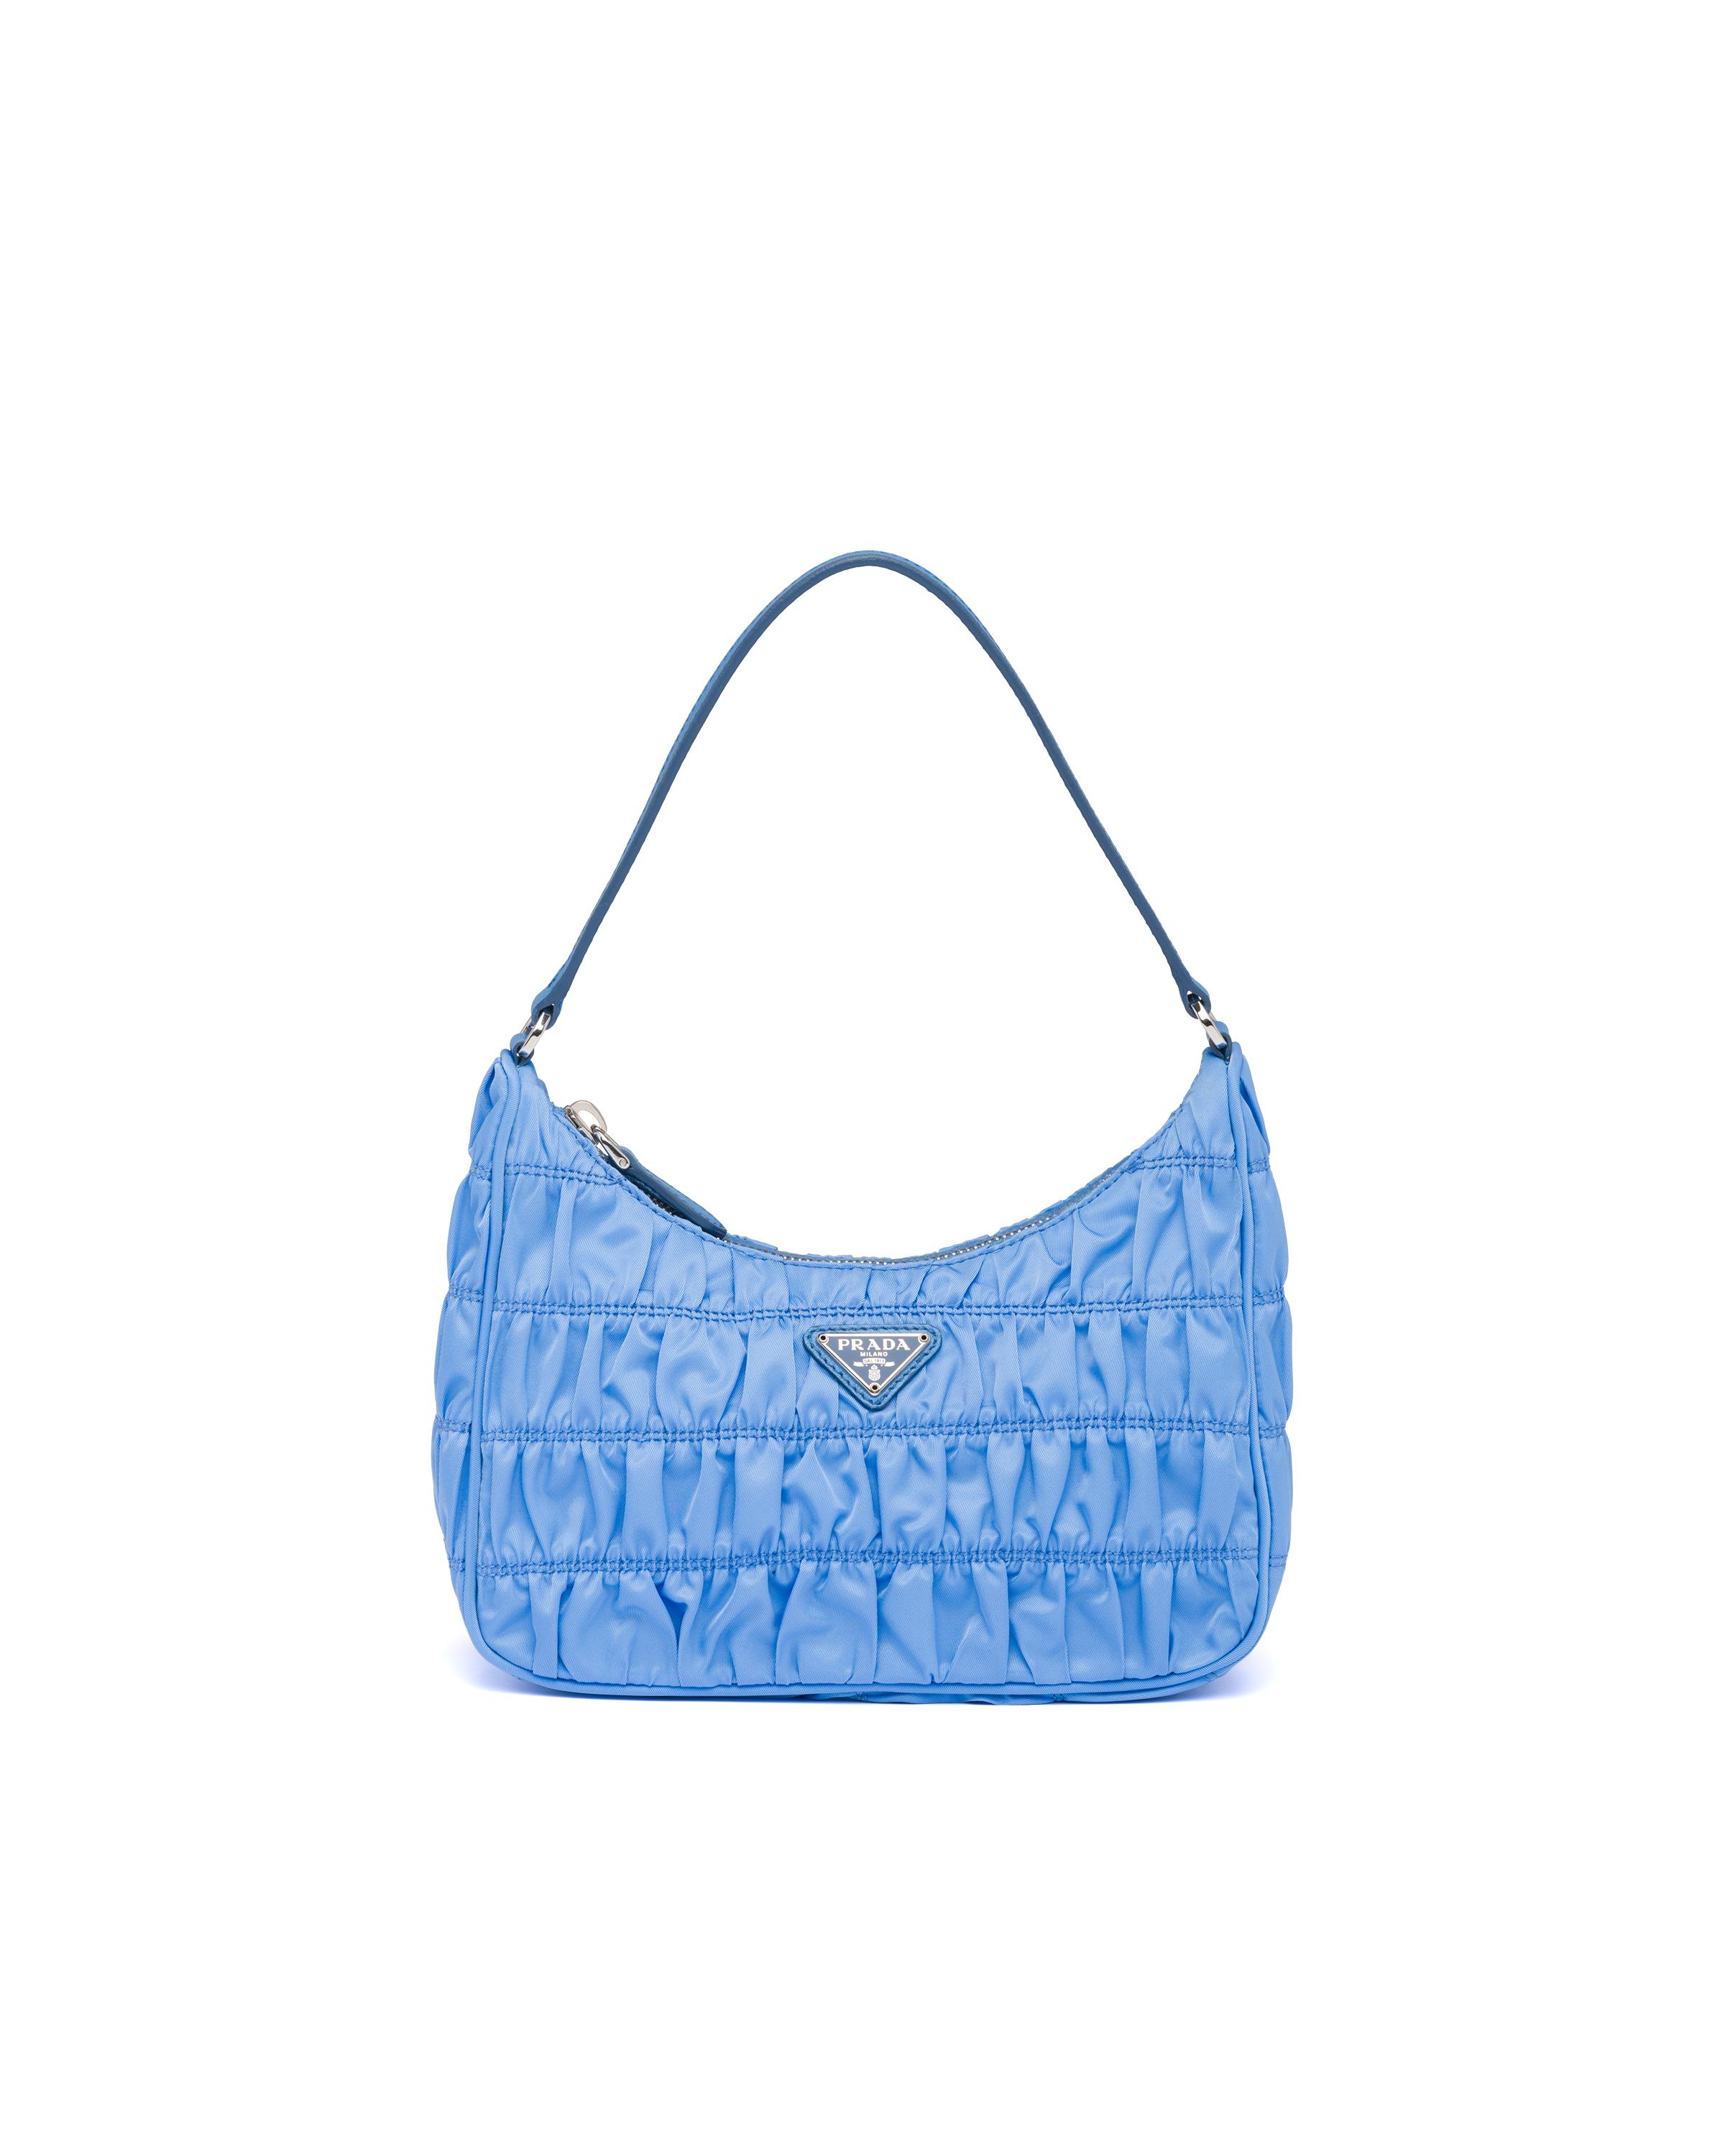 Prada Nylon And Saffiano Leather Mini Bag in Blue | Lyst